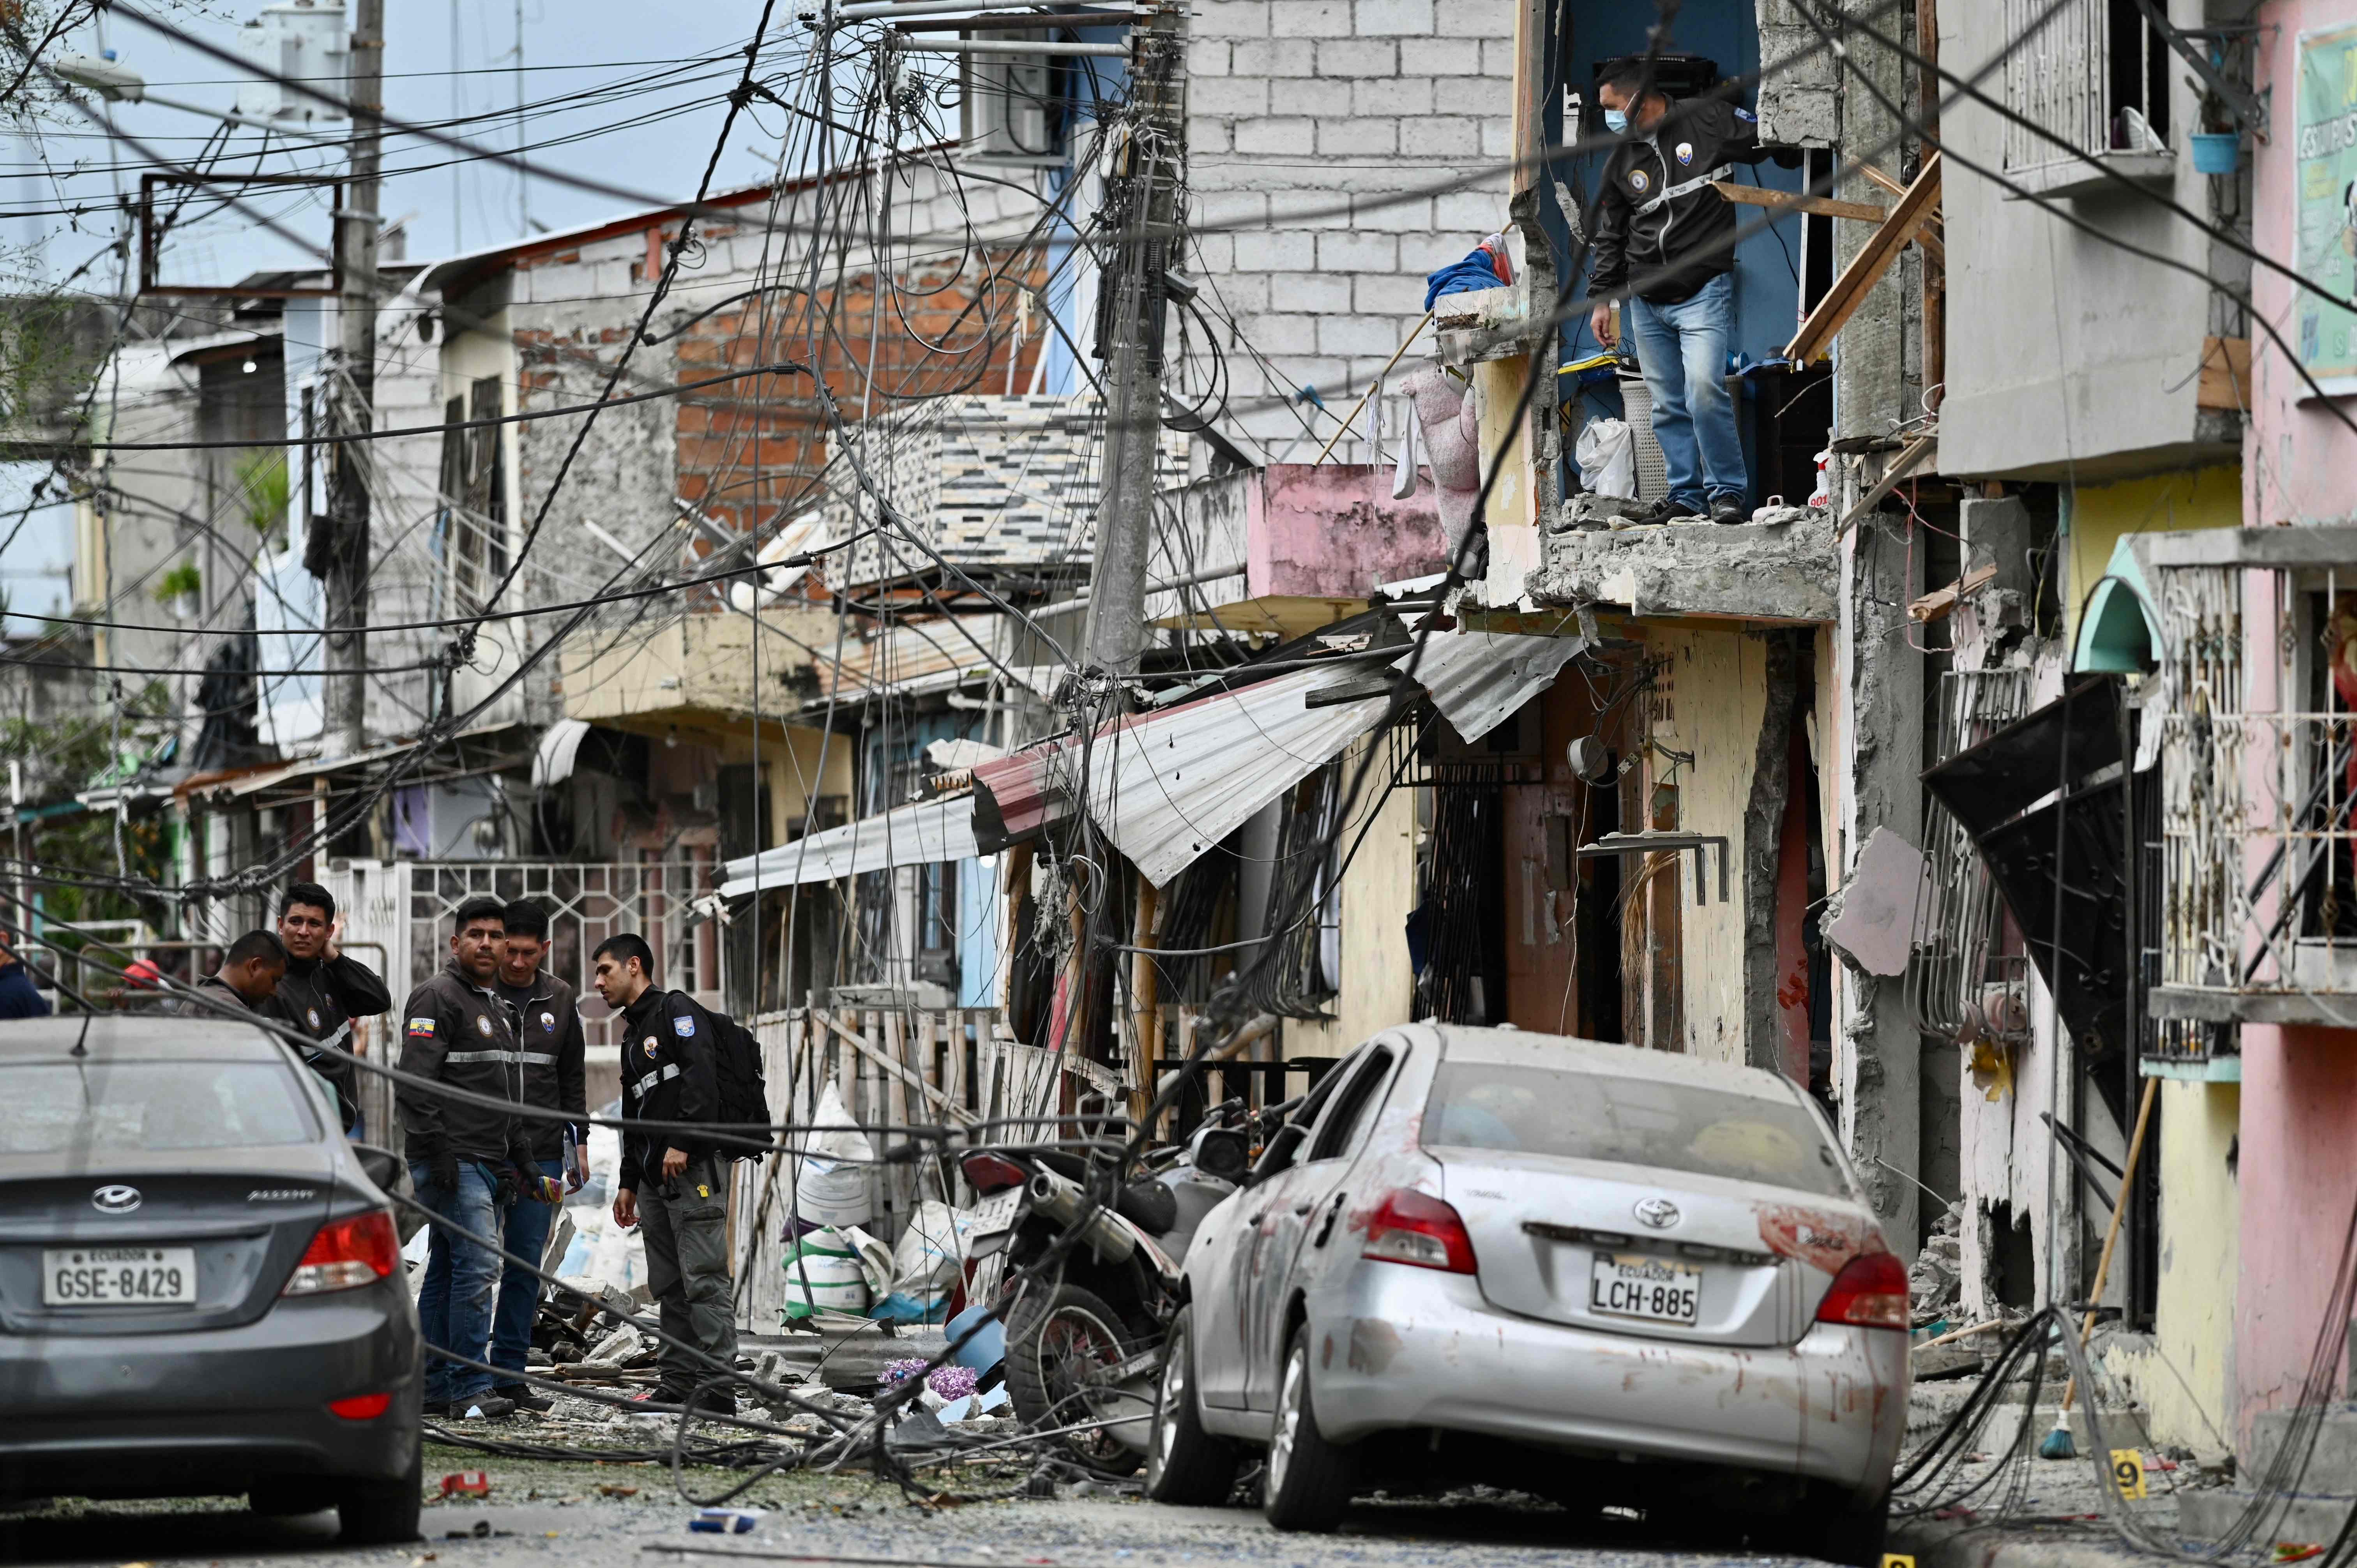 La policía de Ecuador inspecciona el lugar donde ocurrió la explosión que mató a cinco personas y que se atribuye al crimen organizado. (Foto Prensa Libre: AFP)